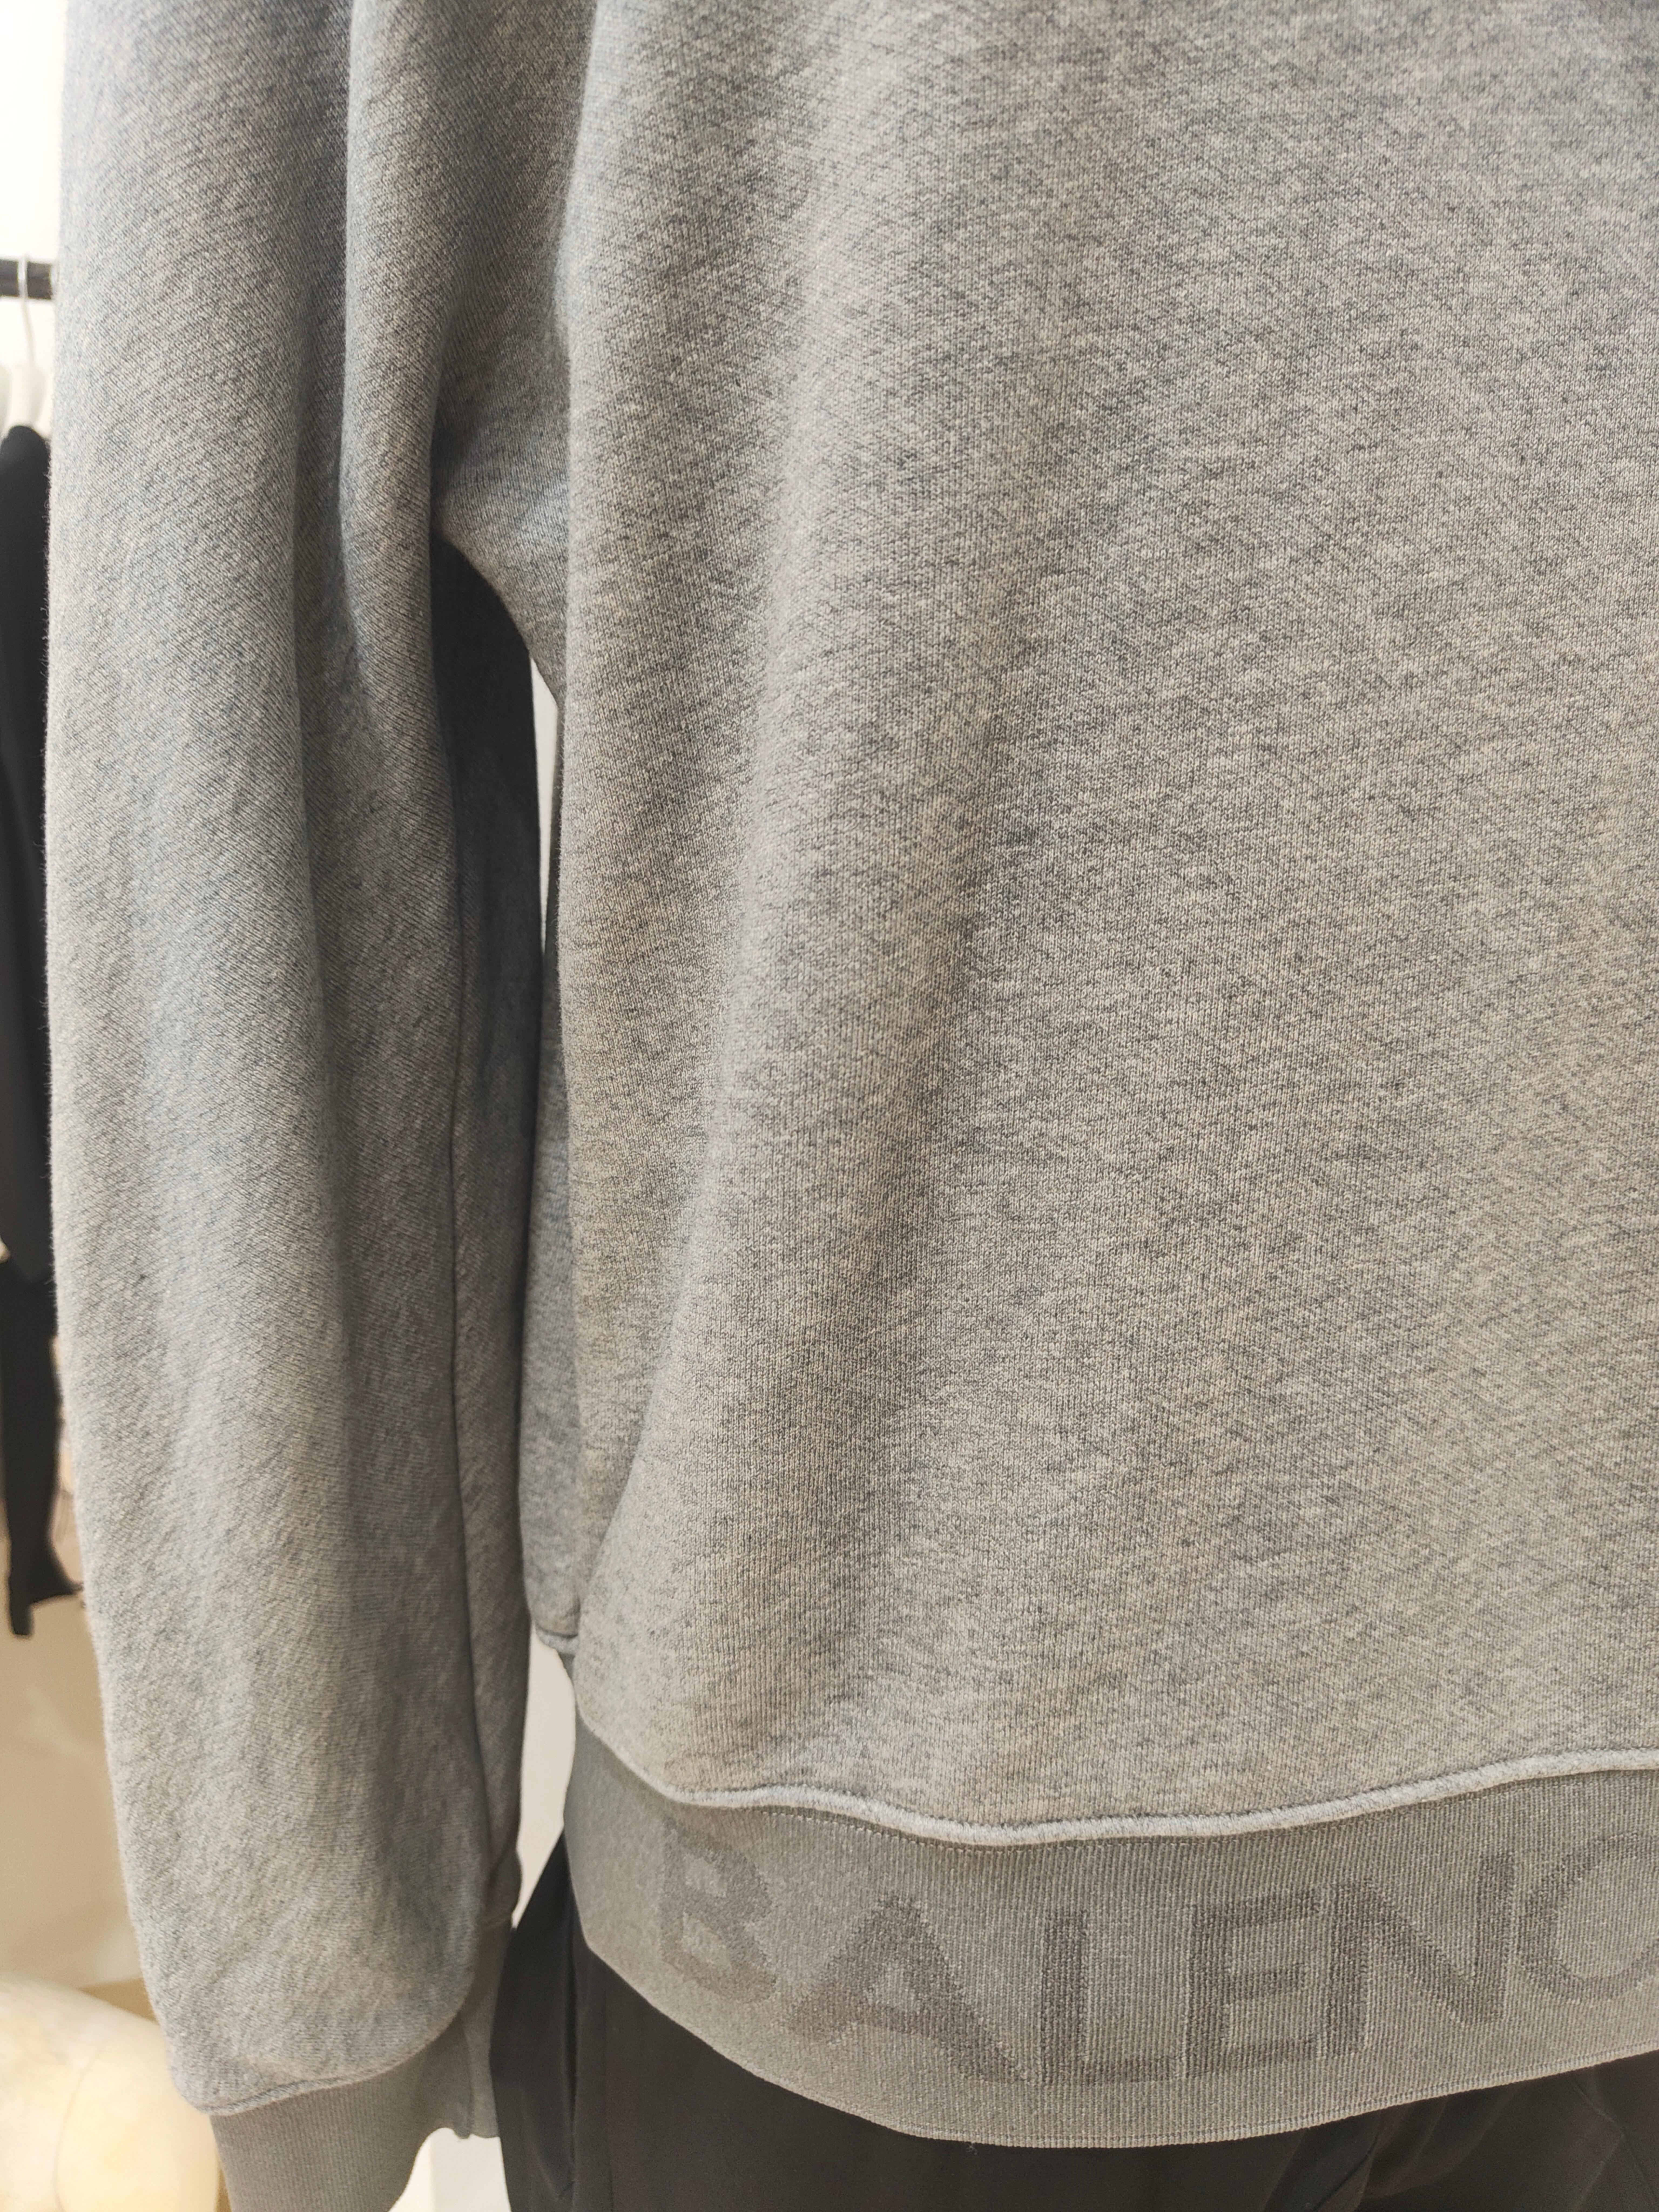 Balenciaga grey cotton sweater In Excellent Condition For Sale In Capri, IT